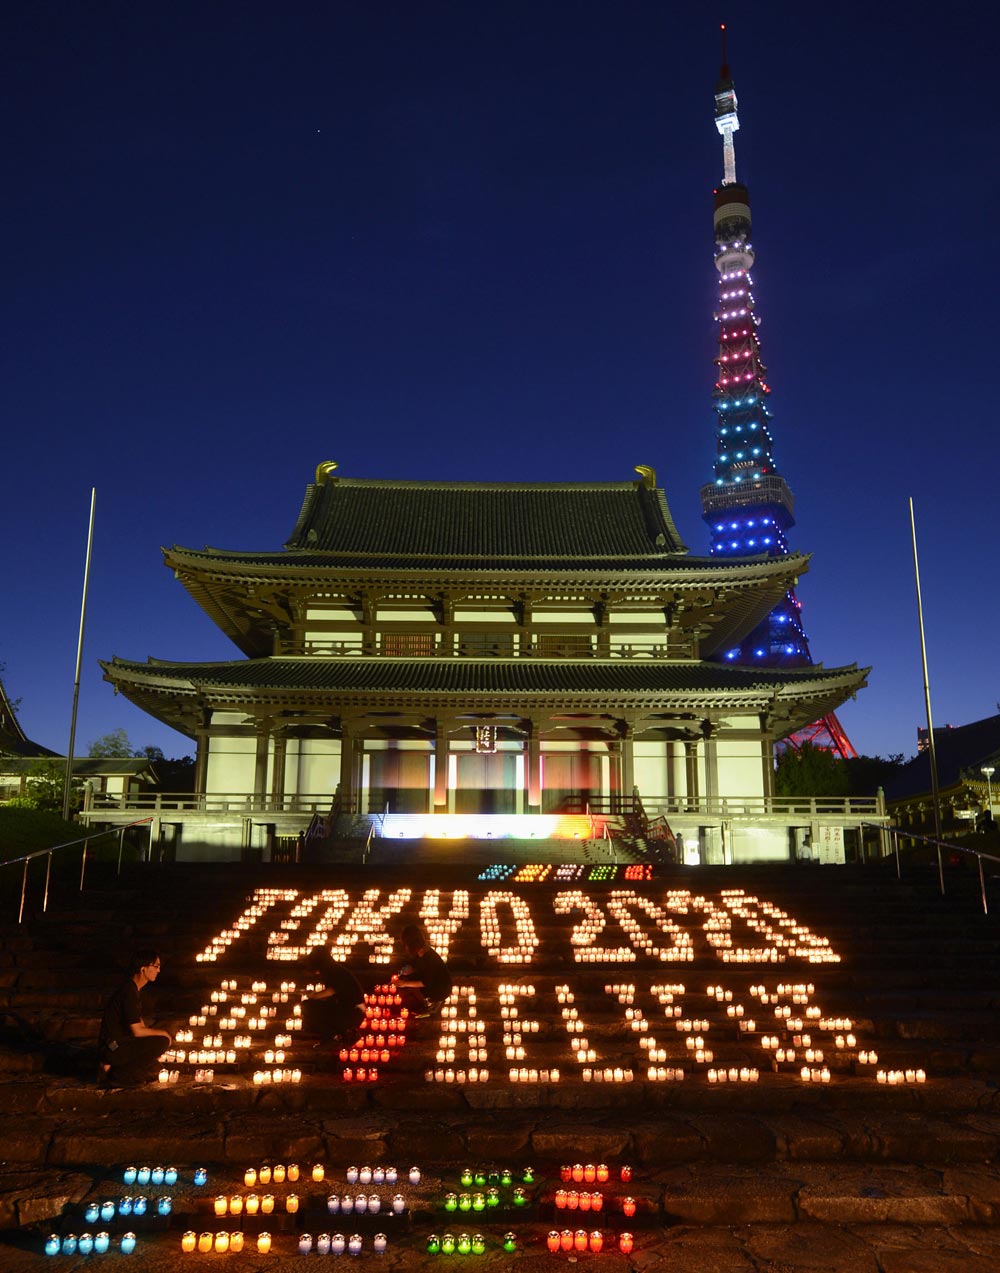 जापान: टोक्‍यो  में टोक्‍यो टावर के पीछे स्थित जेजोजी मंदिर के परिसर में ओलंपिक के रंग में मोमबर्ती को जलाया गया। इसमें यह संदेश दिया गया 'टोक्‍यो 2020 वी विलीव'।